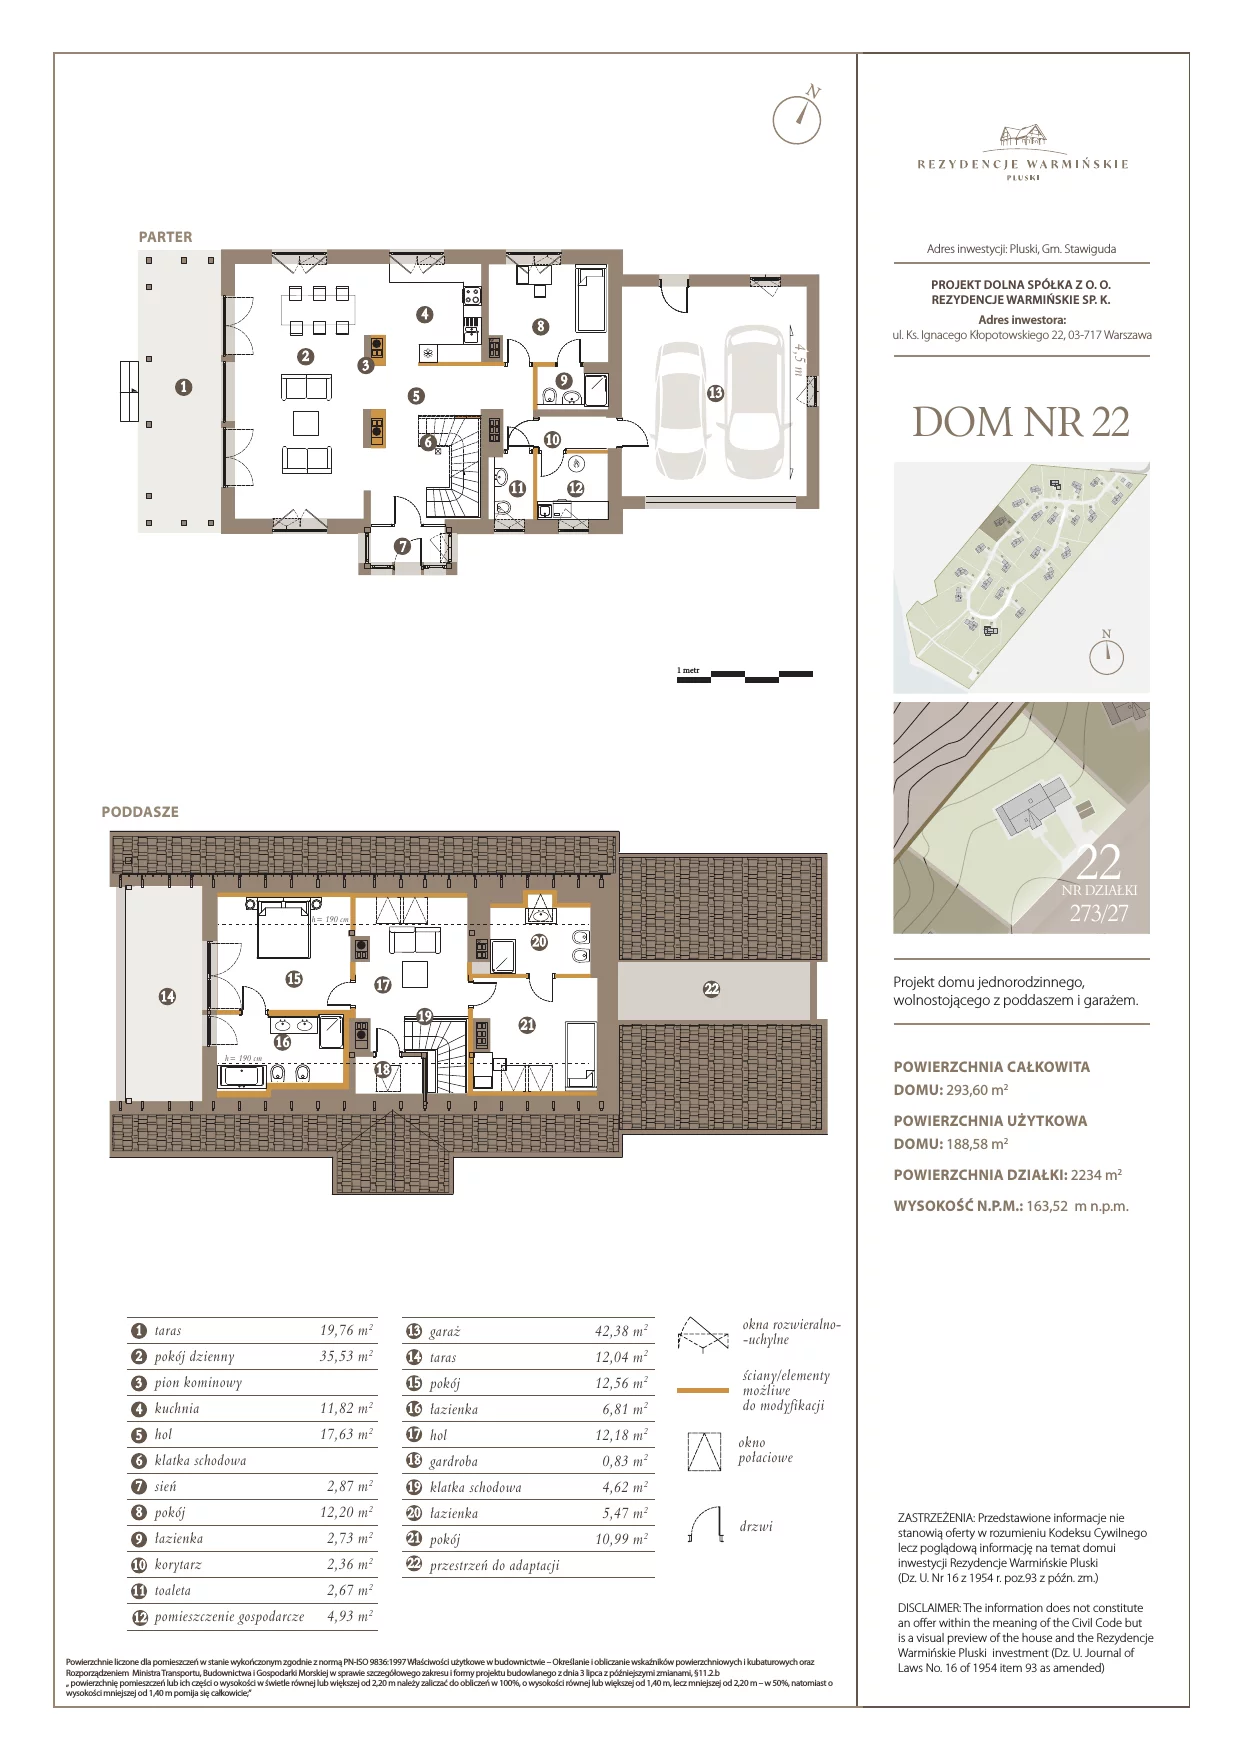 Dom i rezydencja 188,58 m², oferta nr 22, Rezydencje Warmińskie, Pluski, ul. Polna